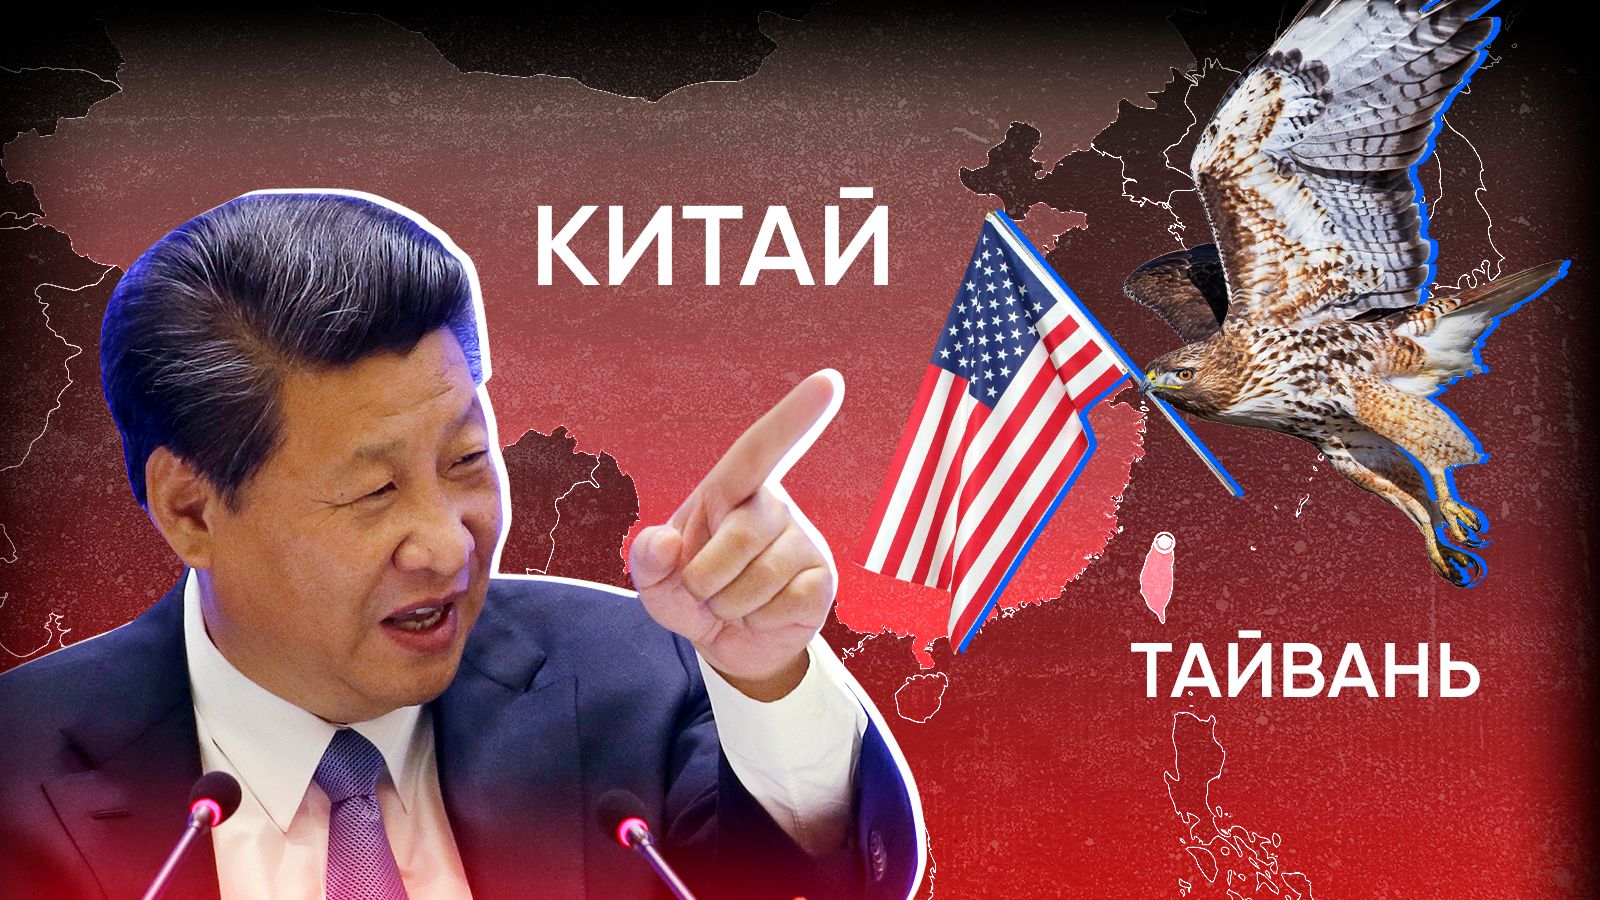 Тайвань на китайском. Китай против Тайваня. Тайвань и Китай конфликт. Китай против США.